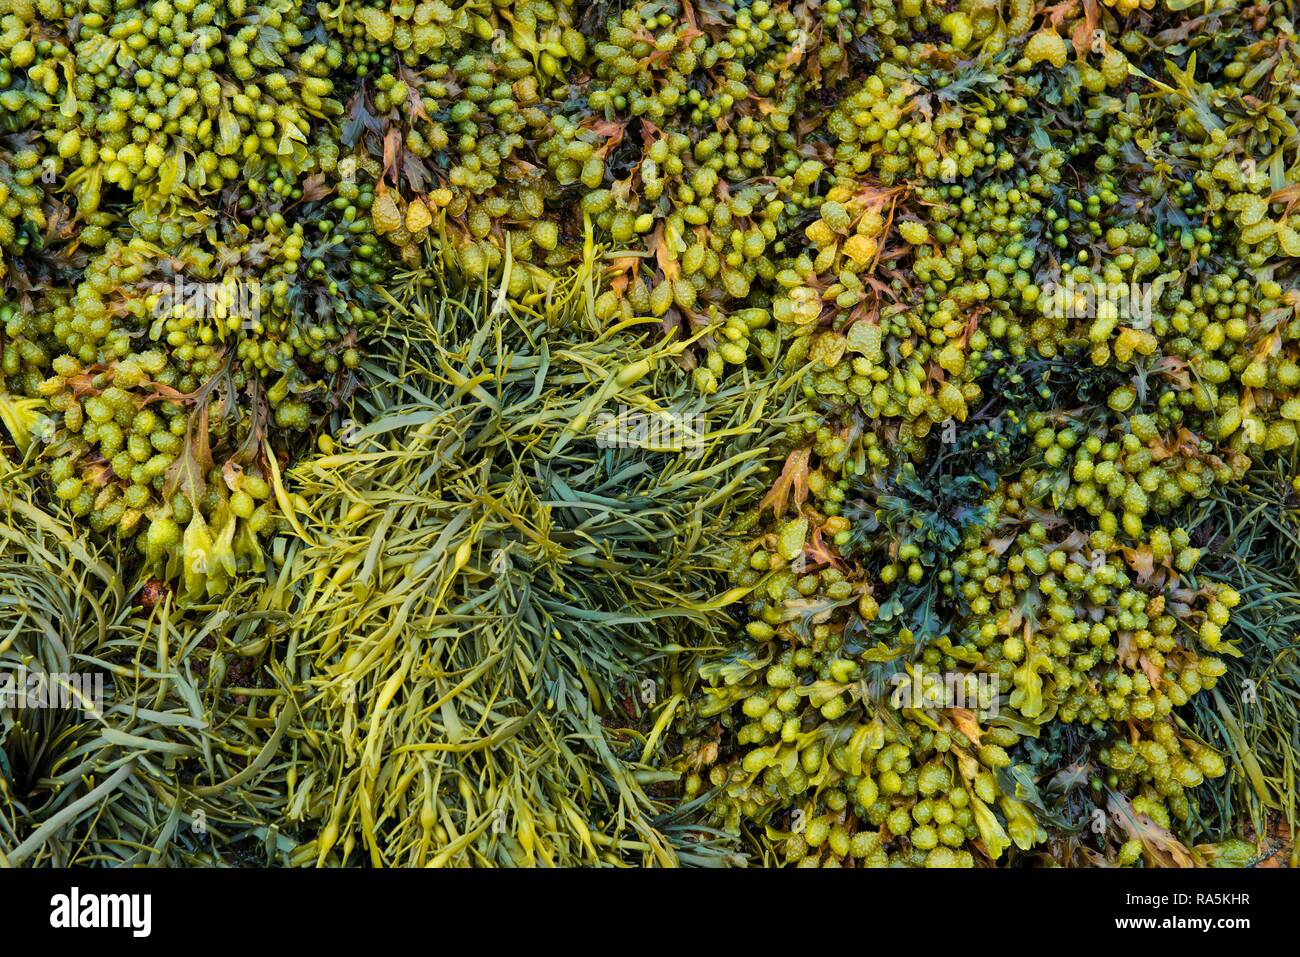 Divers, algues marines (Fucus spiralis rack en spirale), canalisé rack (Pelvetia canaliculata), Département Côtes-d'Armor Banque D'Images